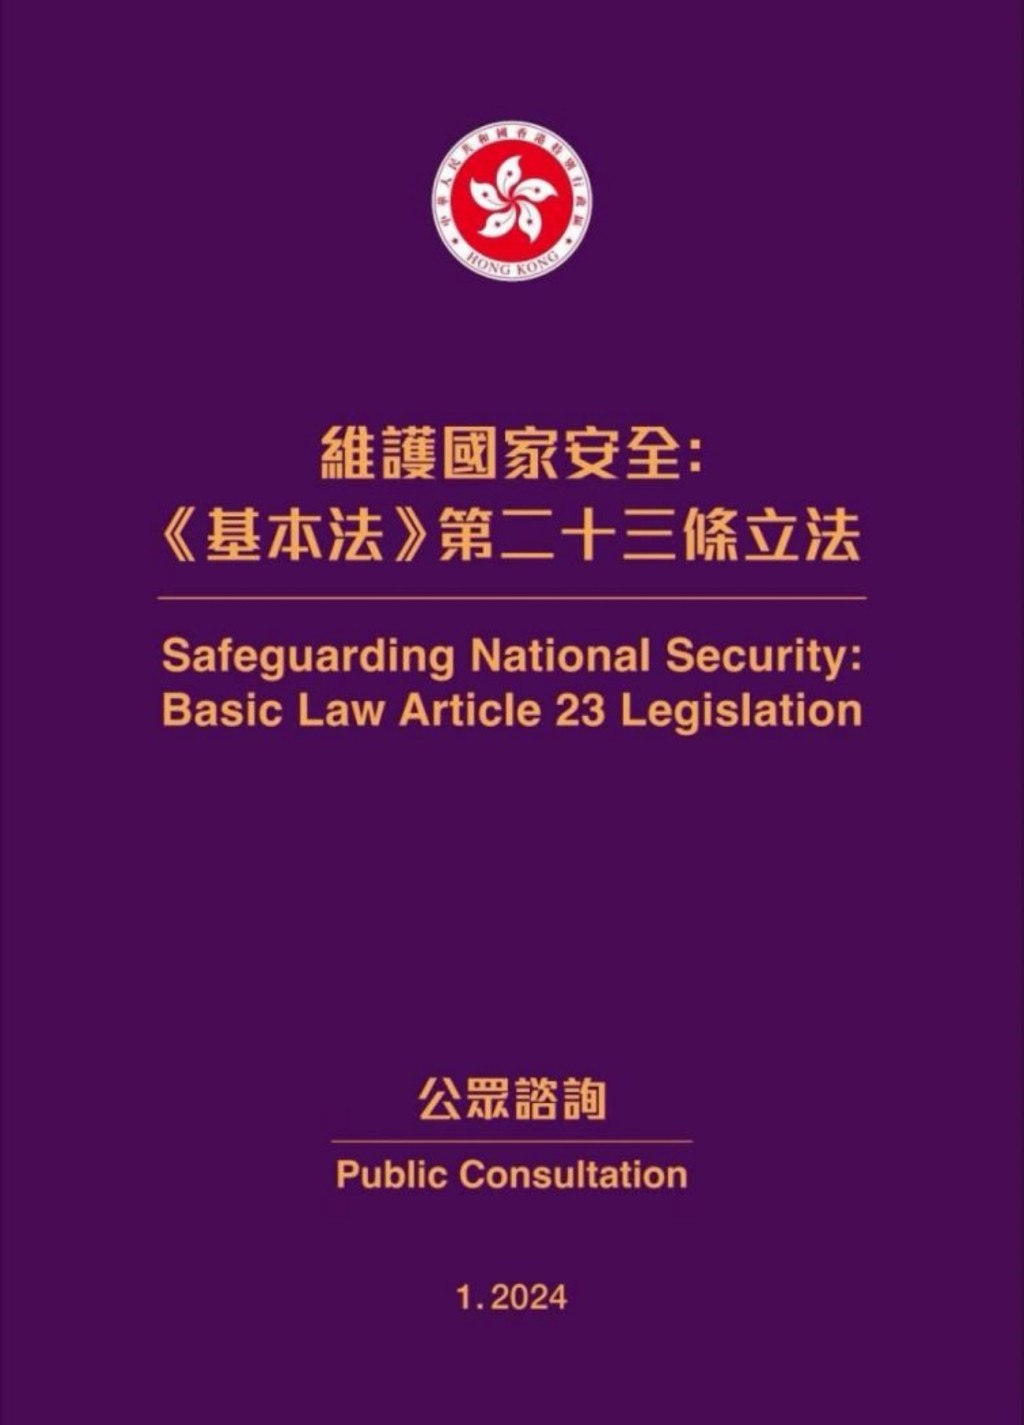 李家超表示，回顾过去一年，香港完成了基本法第23条立法的宪制责任。资料图片